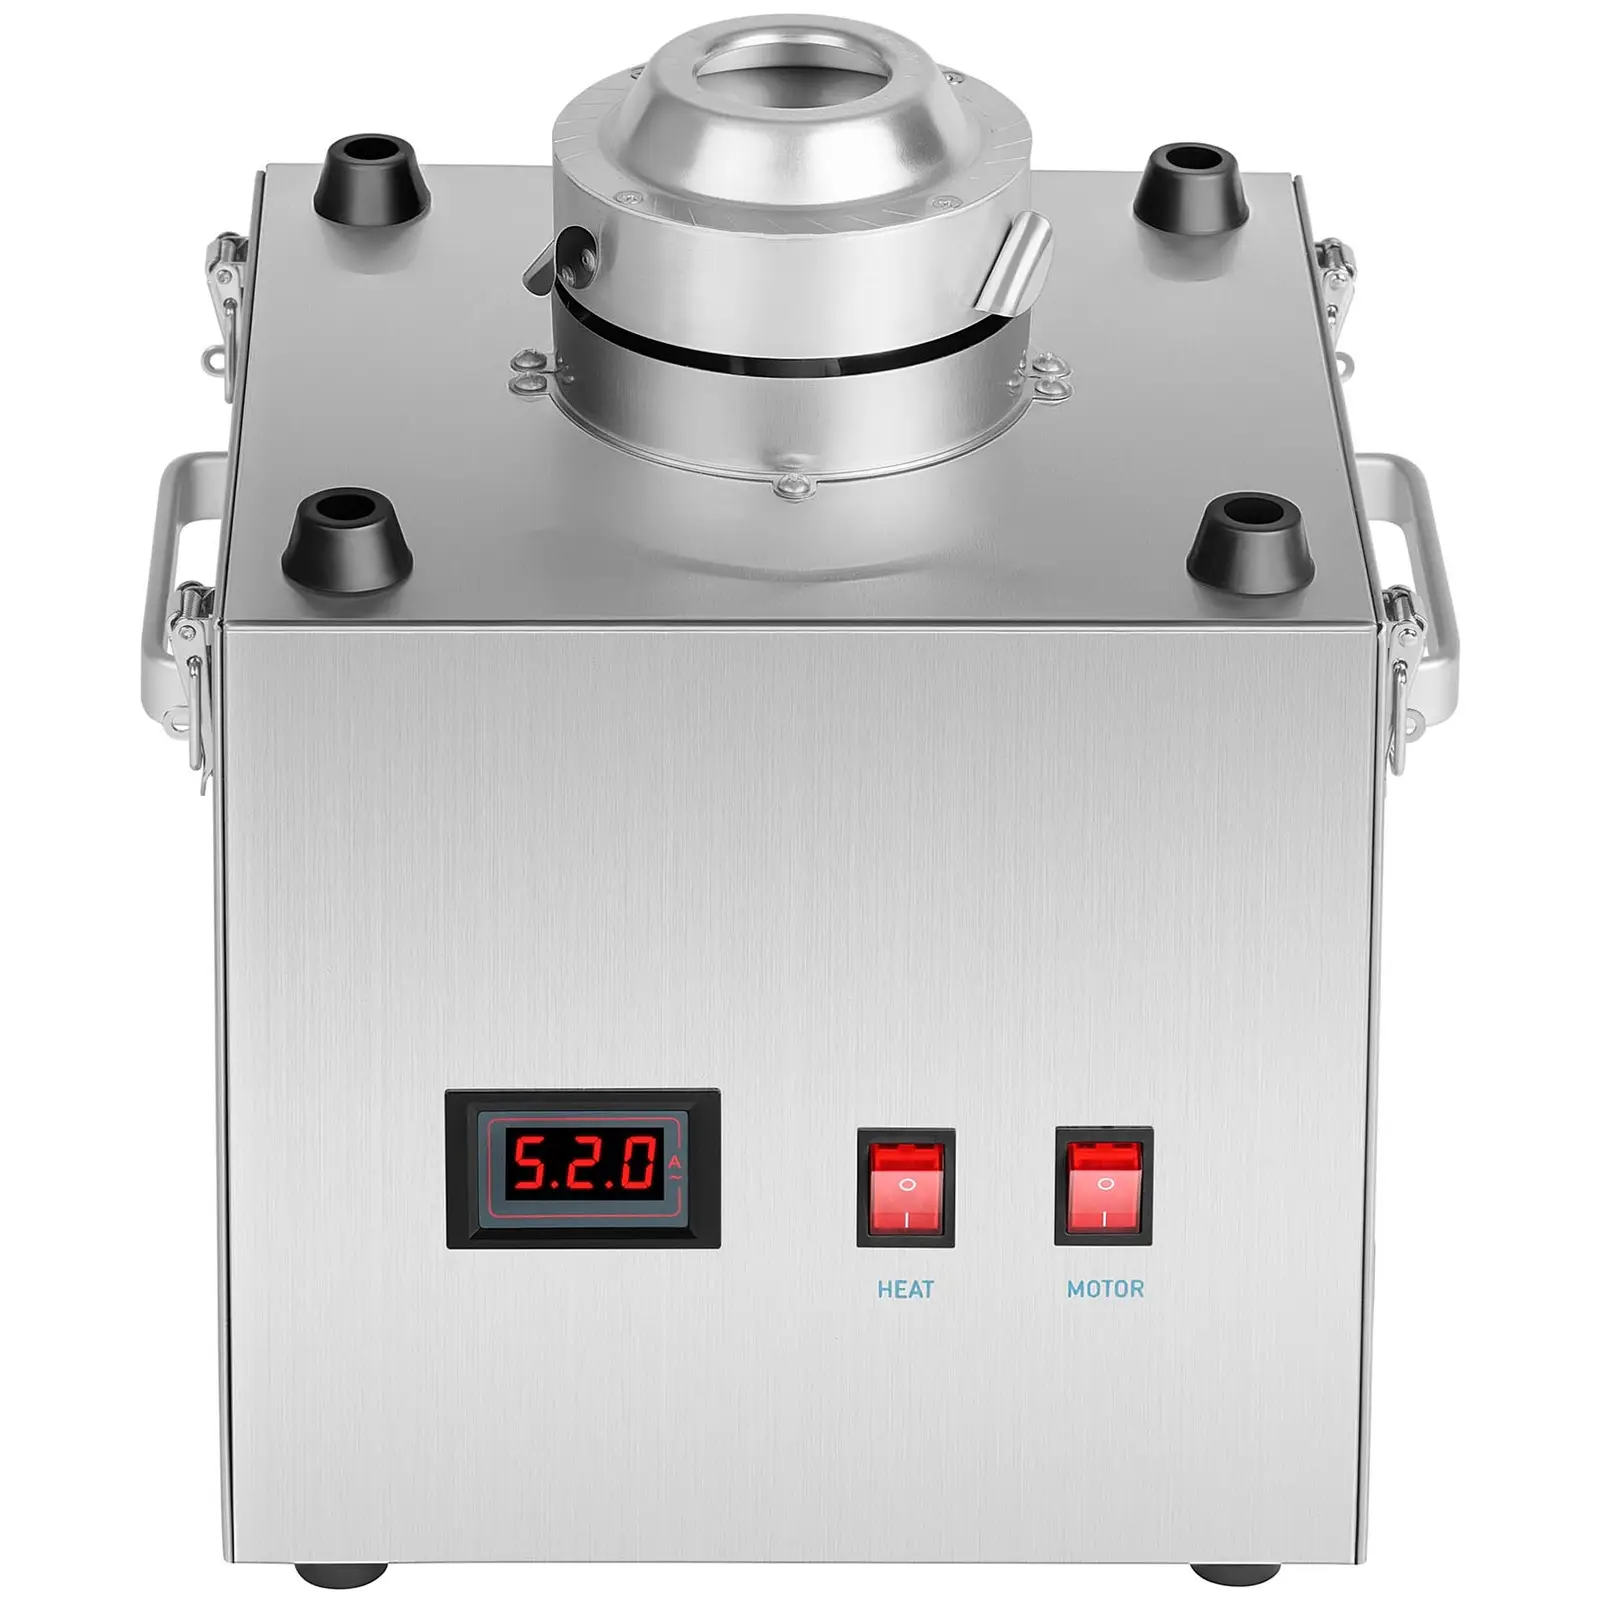 Vattacukor készítő gép készlet LED pálcikákkal - 52 cm - 1.030 W - rozsdamentes acél - 50 db